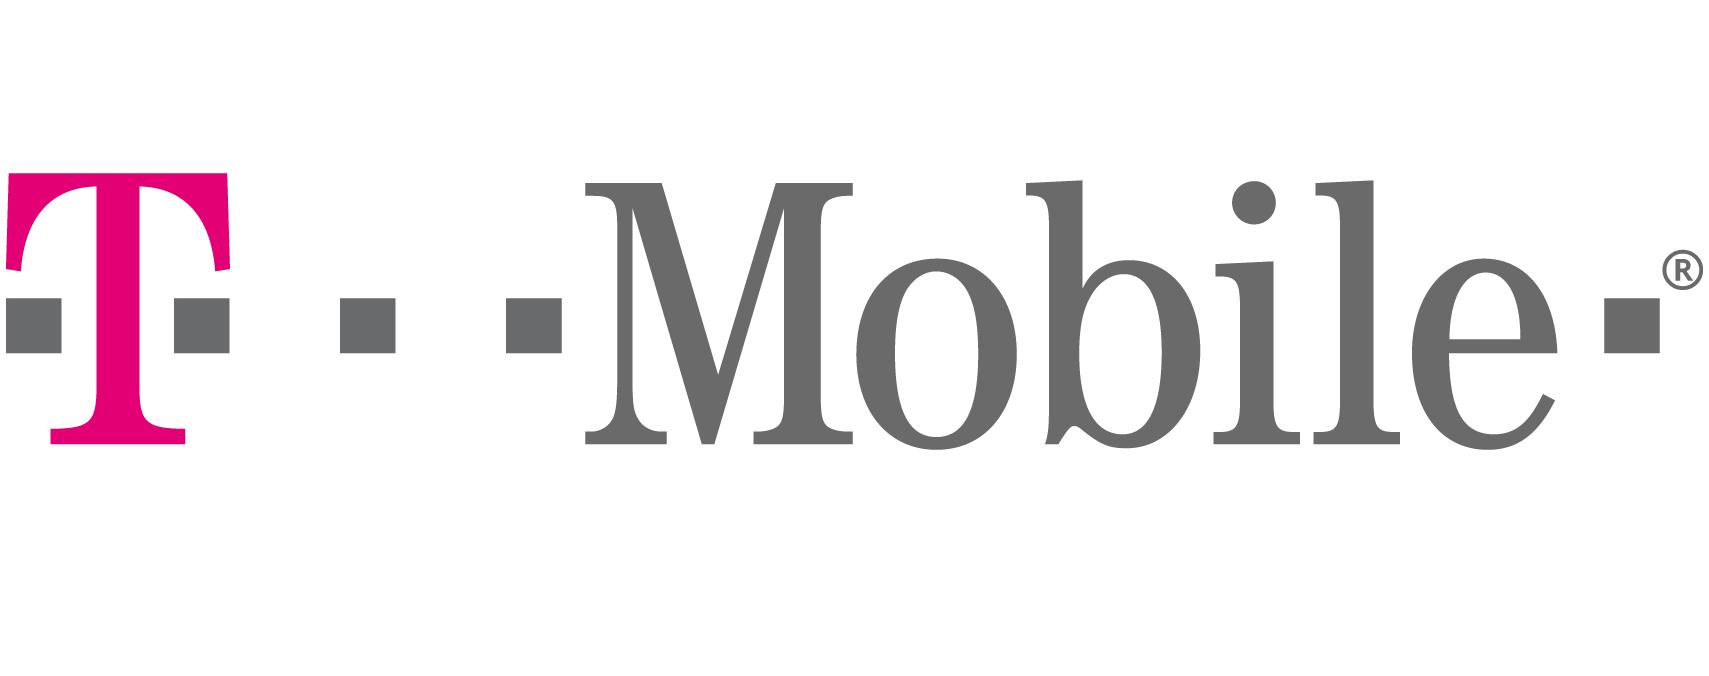 Włamanie na serwer T-Mobile